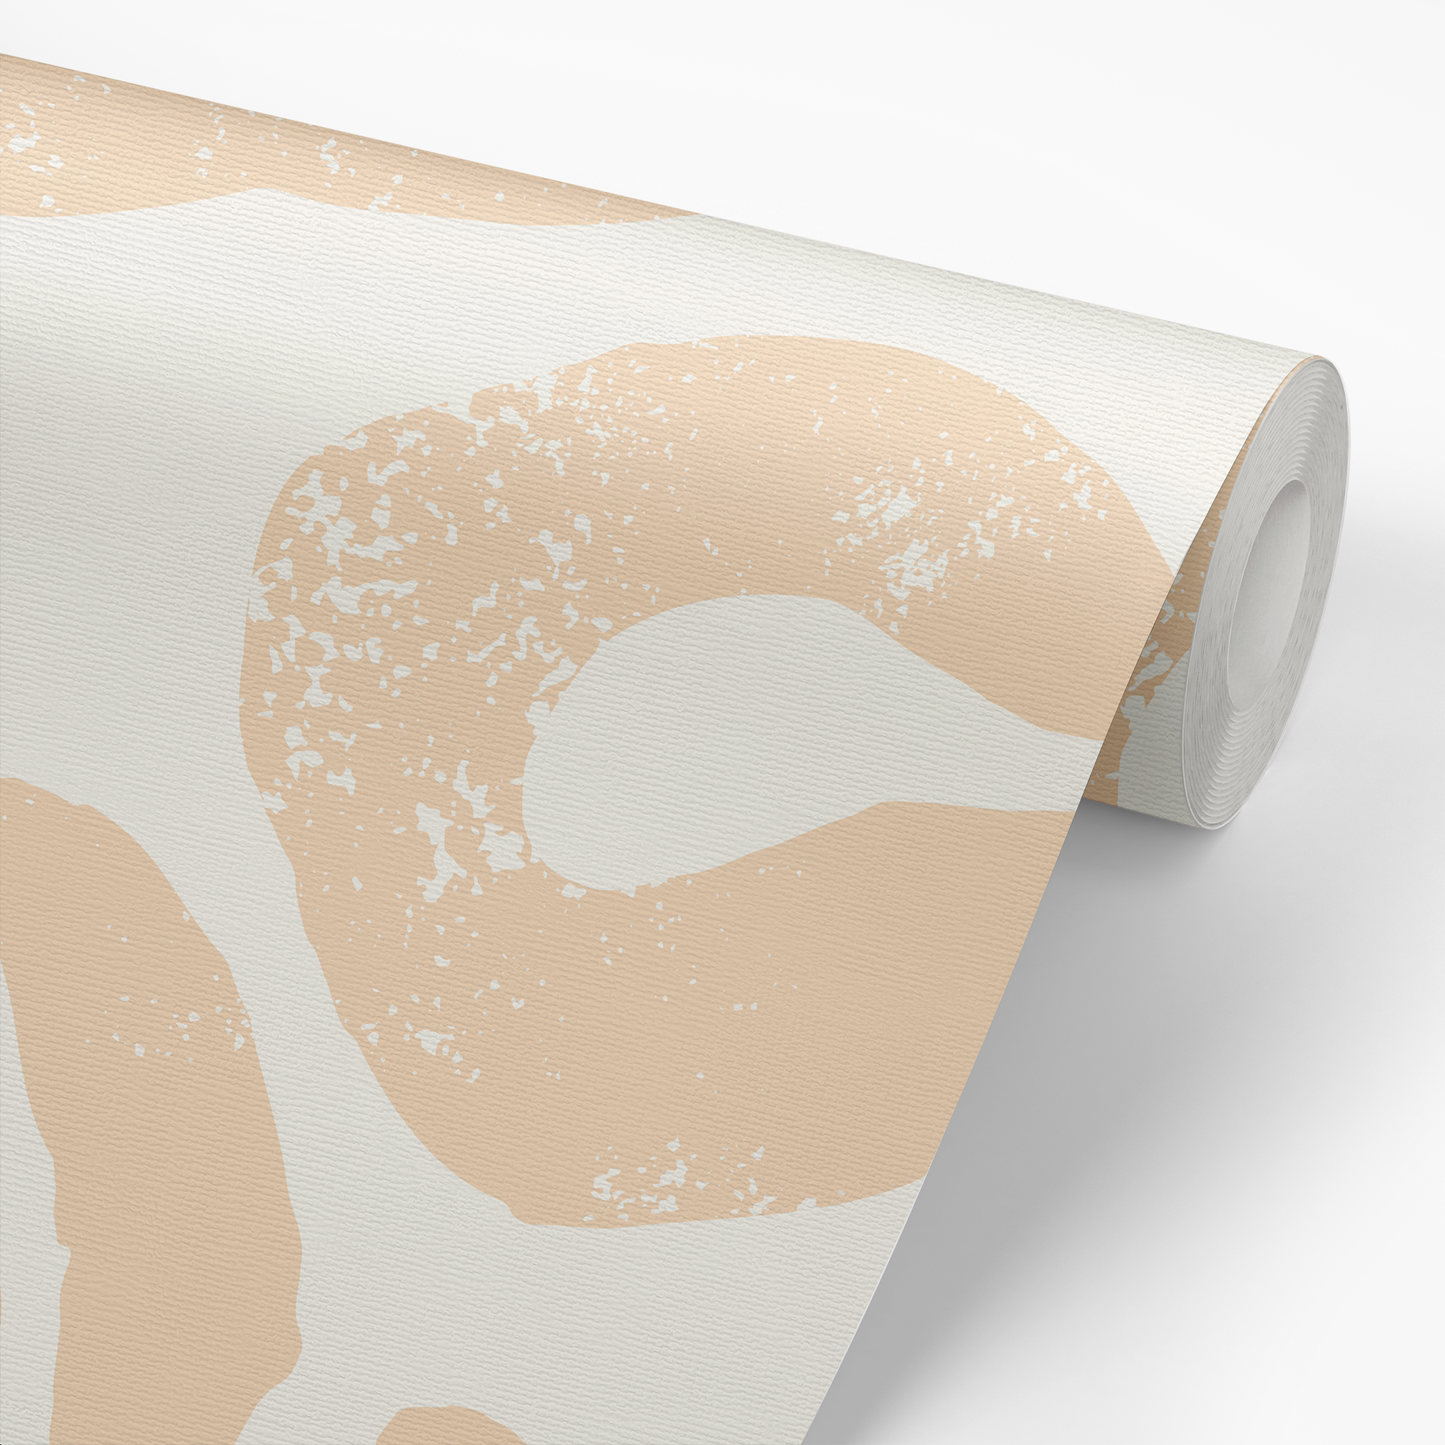 Rustic Animal Print Wallpaper - Cream